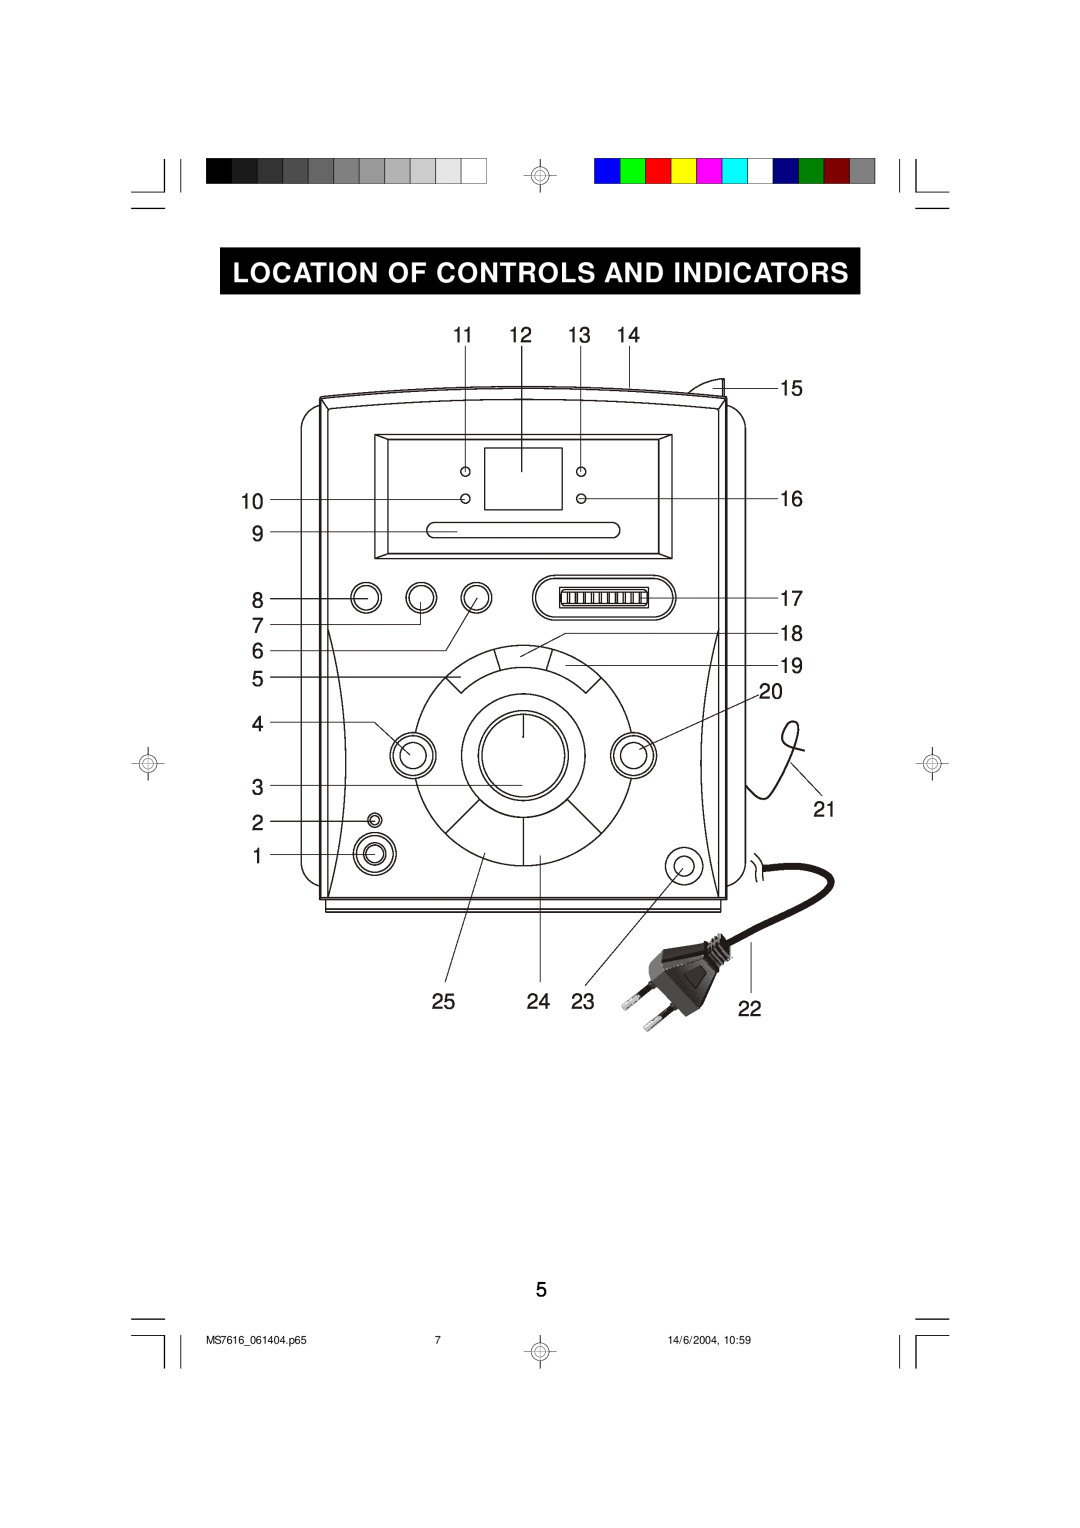 Jwin JX-CD3150D manual Location Of Controls And Indicators, MS7616_061404.p65, 14/6/2004 